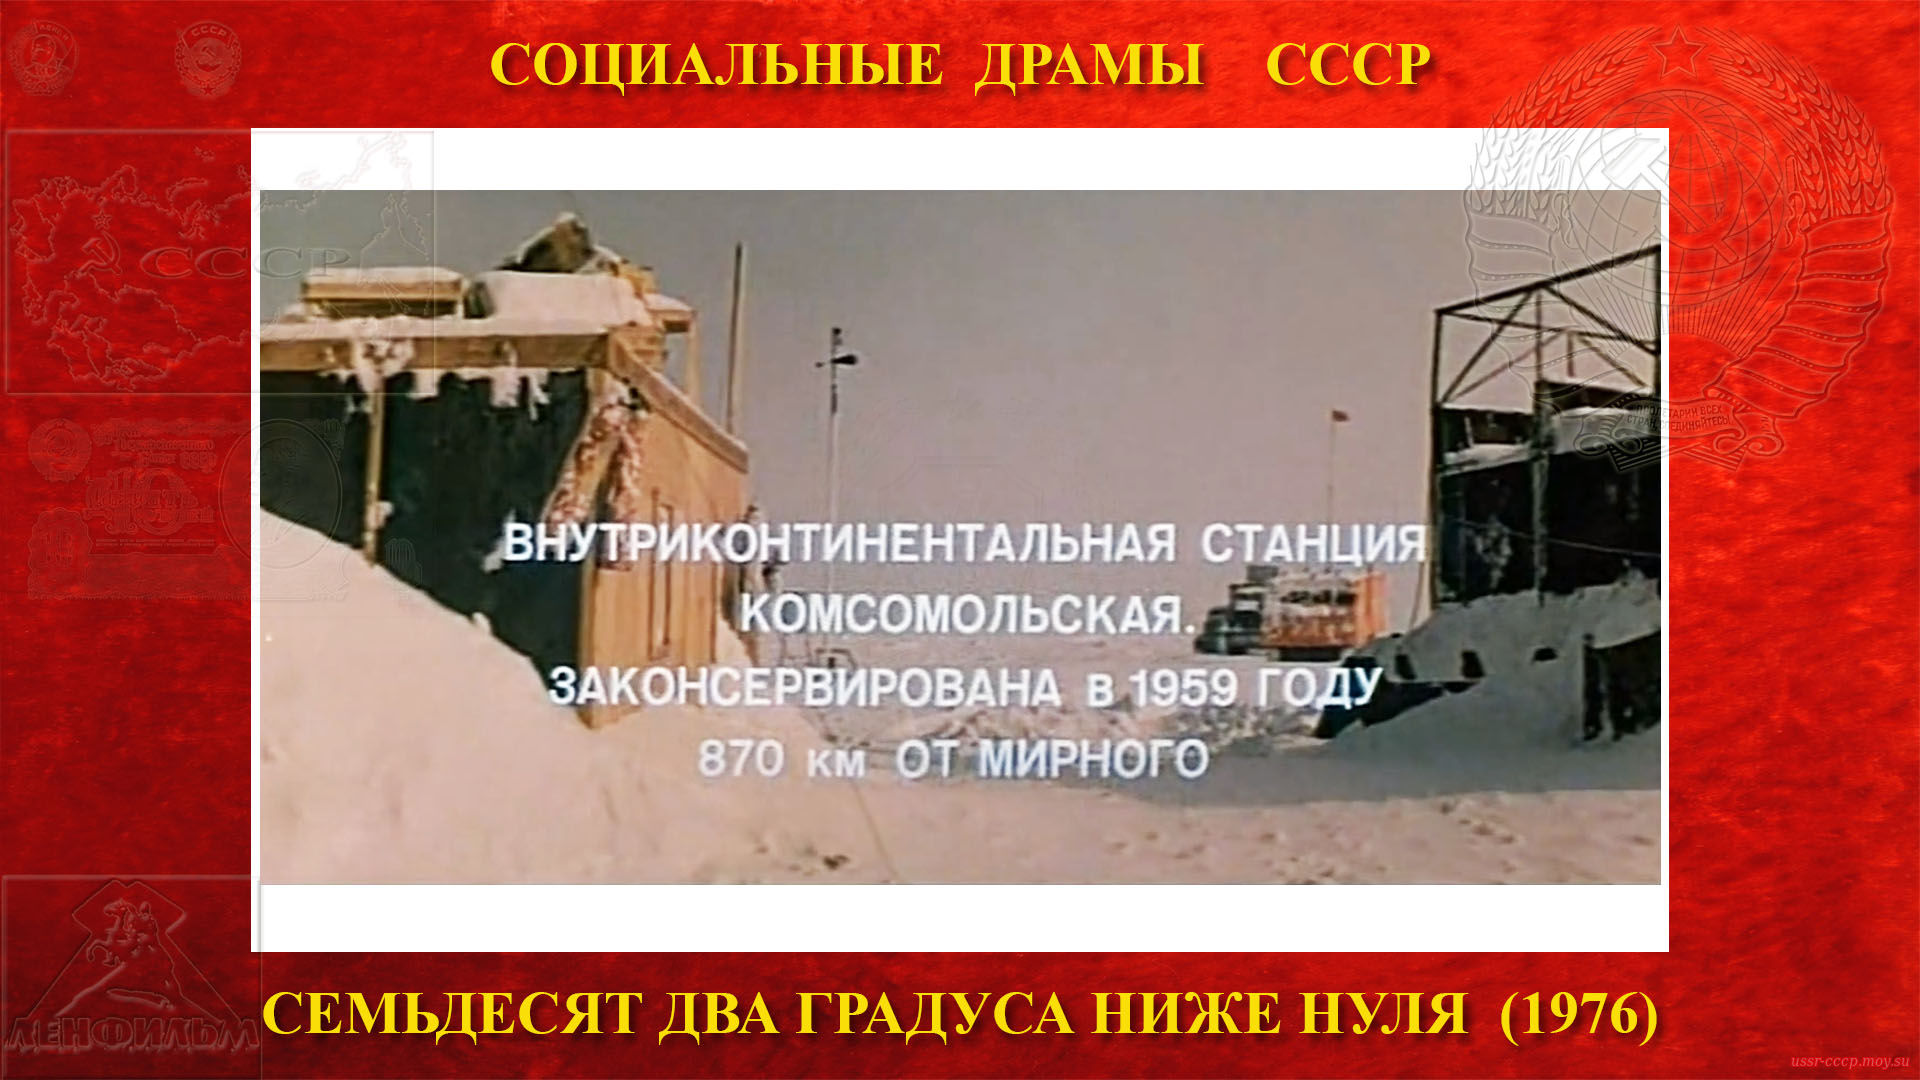 Семьдесят два градуса ниже нуля — Санно-гусеничный поезд доехал до внутриконтинентальной станции «Комсомольская», которая была законсервирована в 1959 году (870 километров от Мирного).